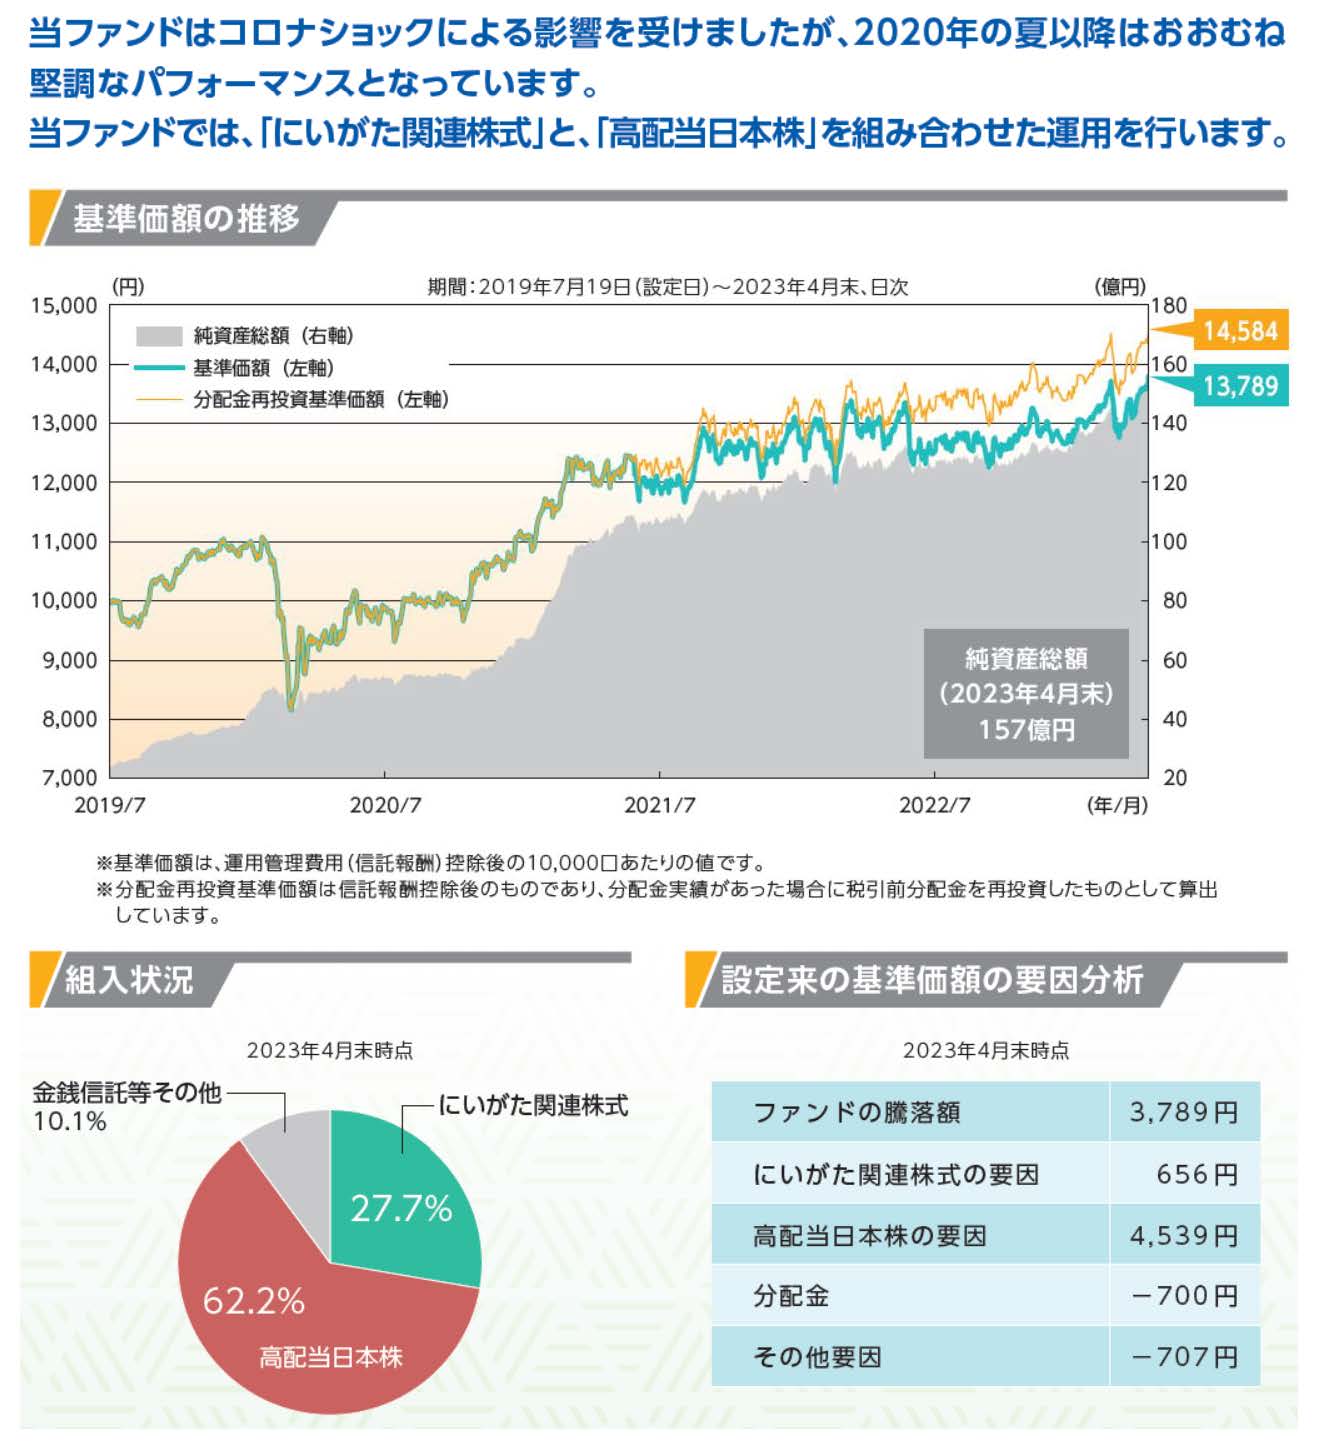 「にいがた未来応援日本株ファンド（以下、当ファンド）」の過去におけるシミュレーションでは、良好なパフォーマンスとなっています。